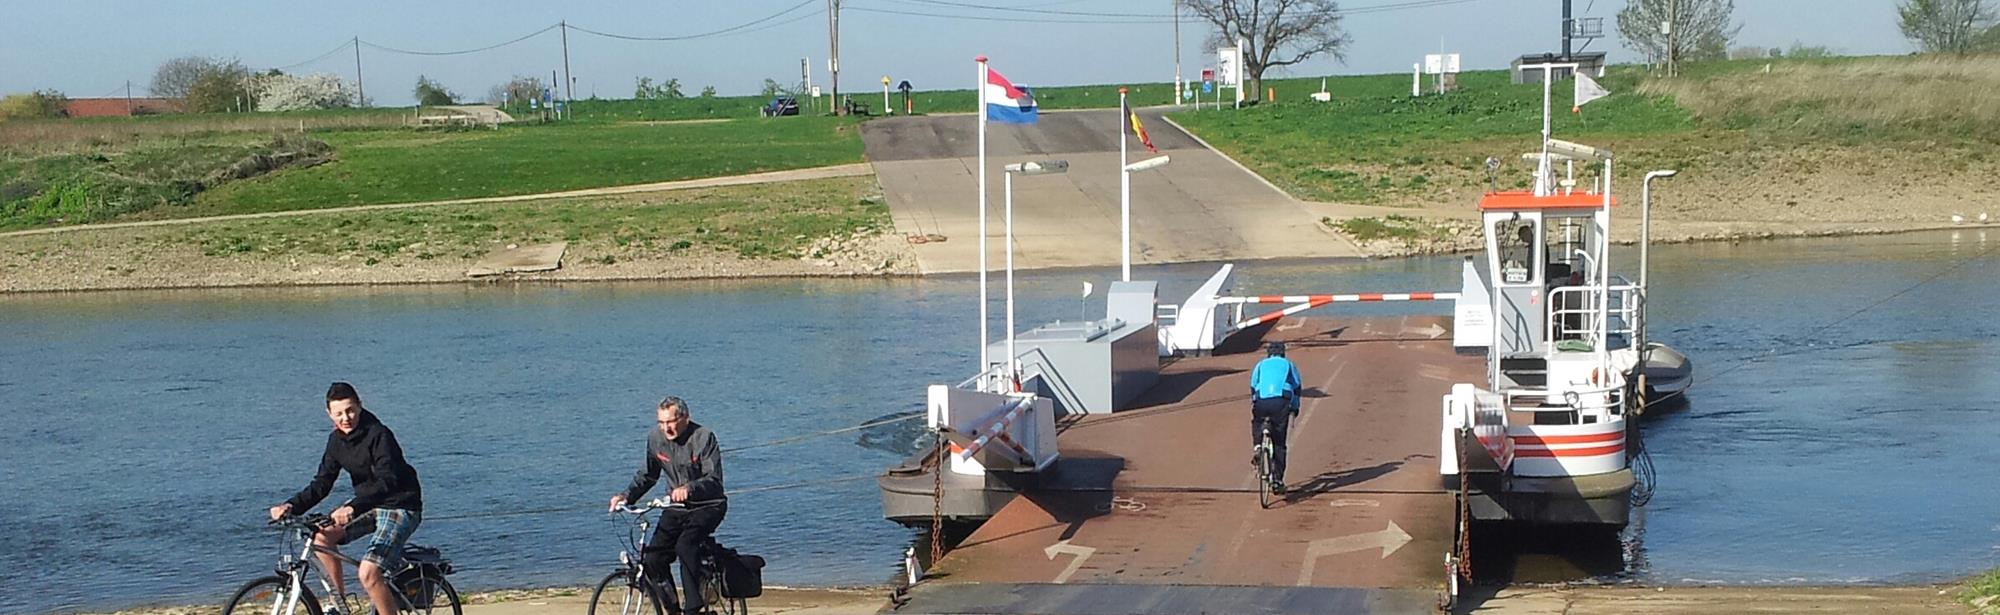 Voet- en fietsveer Hoal Euver II Berg (NL) - Meeswijk (BE)